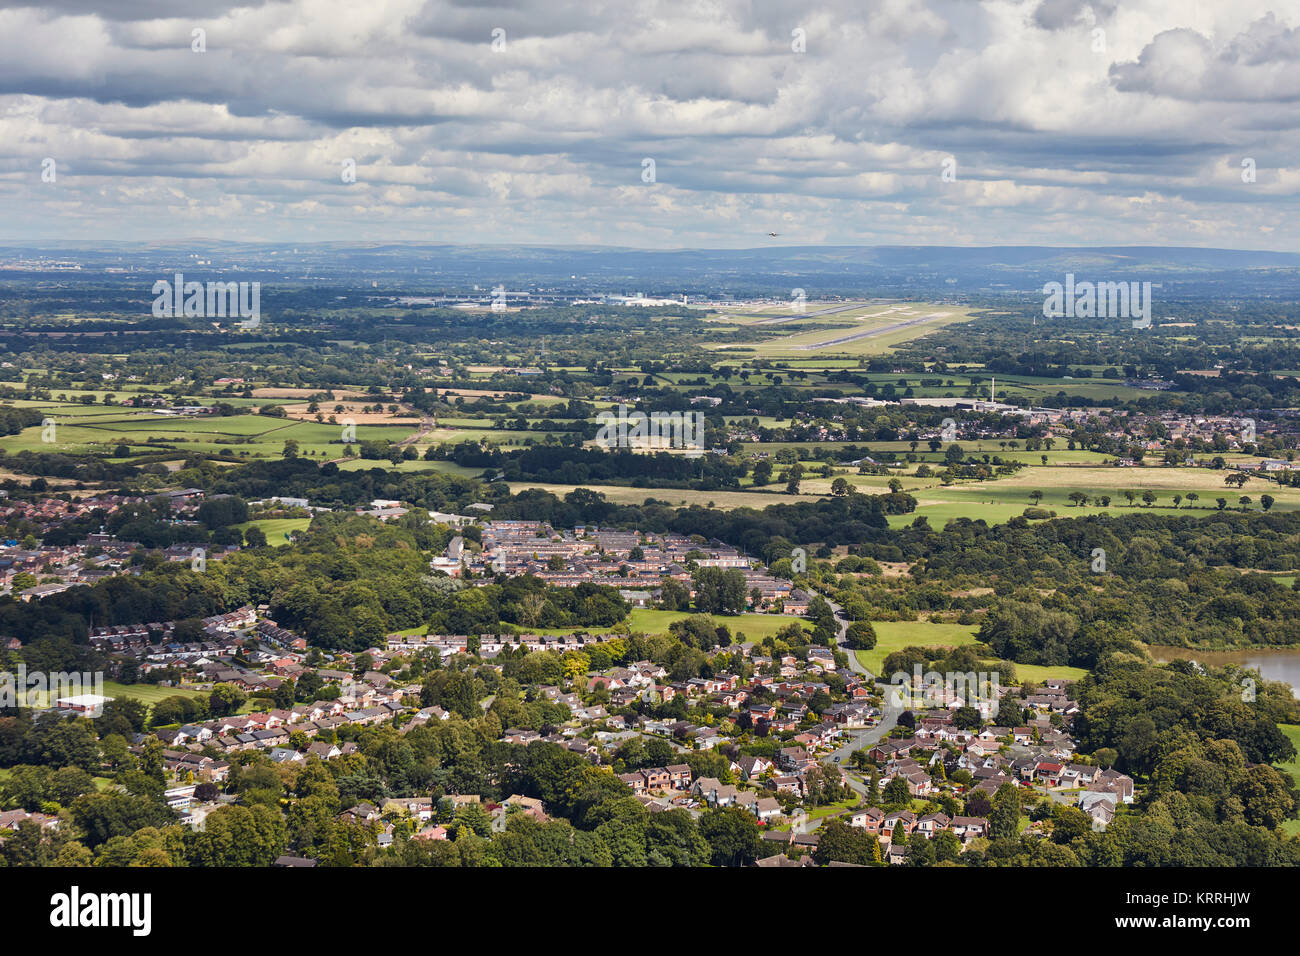 Une vue aérienne de la banlieue de Londres avec l'aéroport de Manchester visible dans la distance Banque D'Images